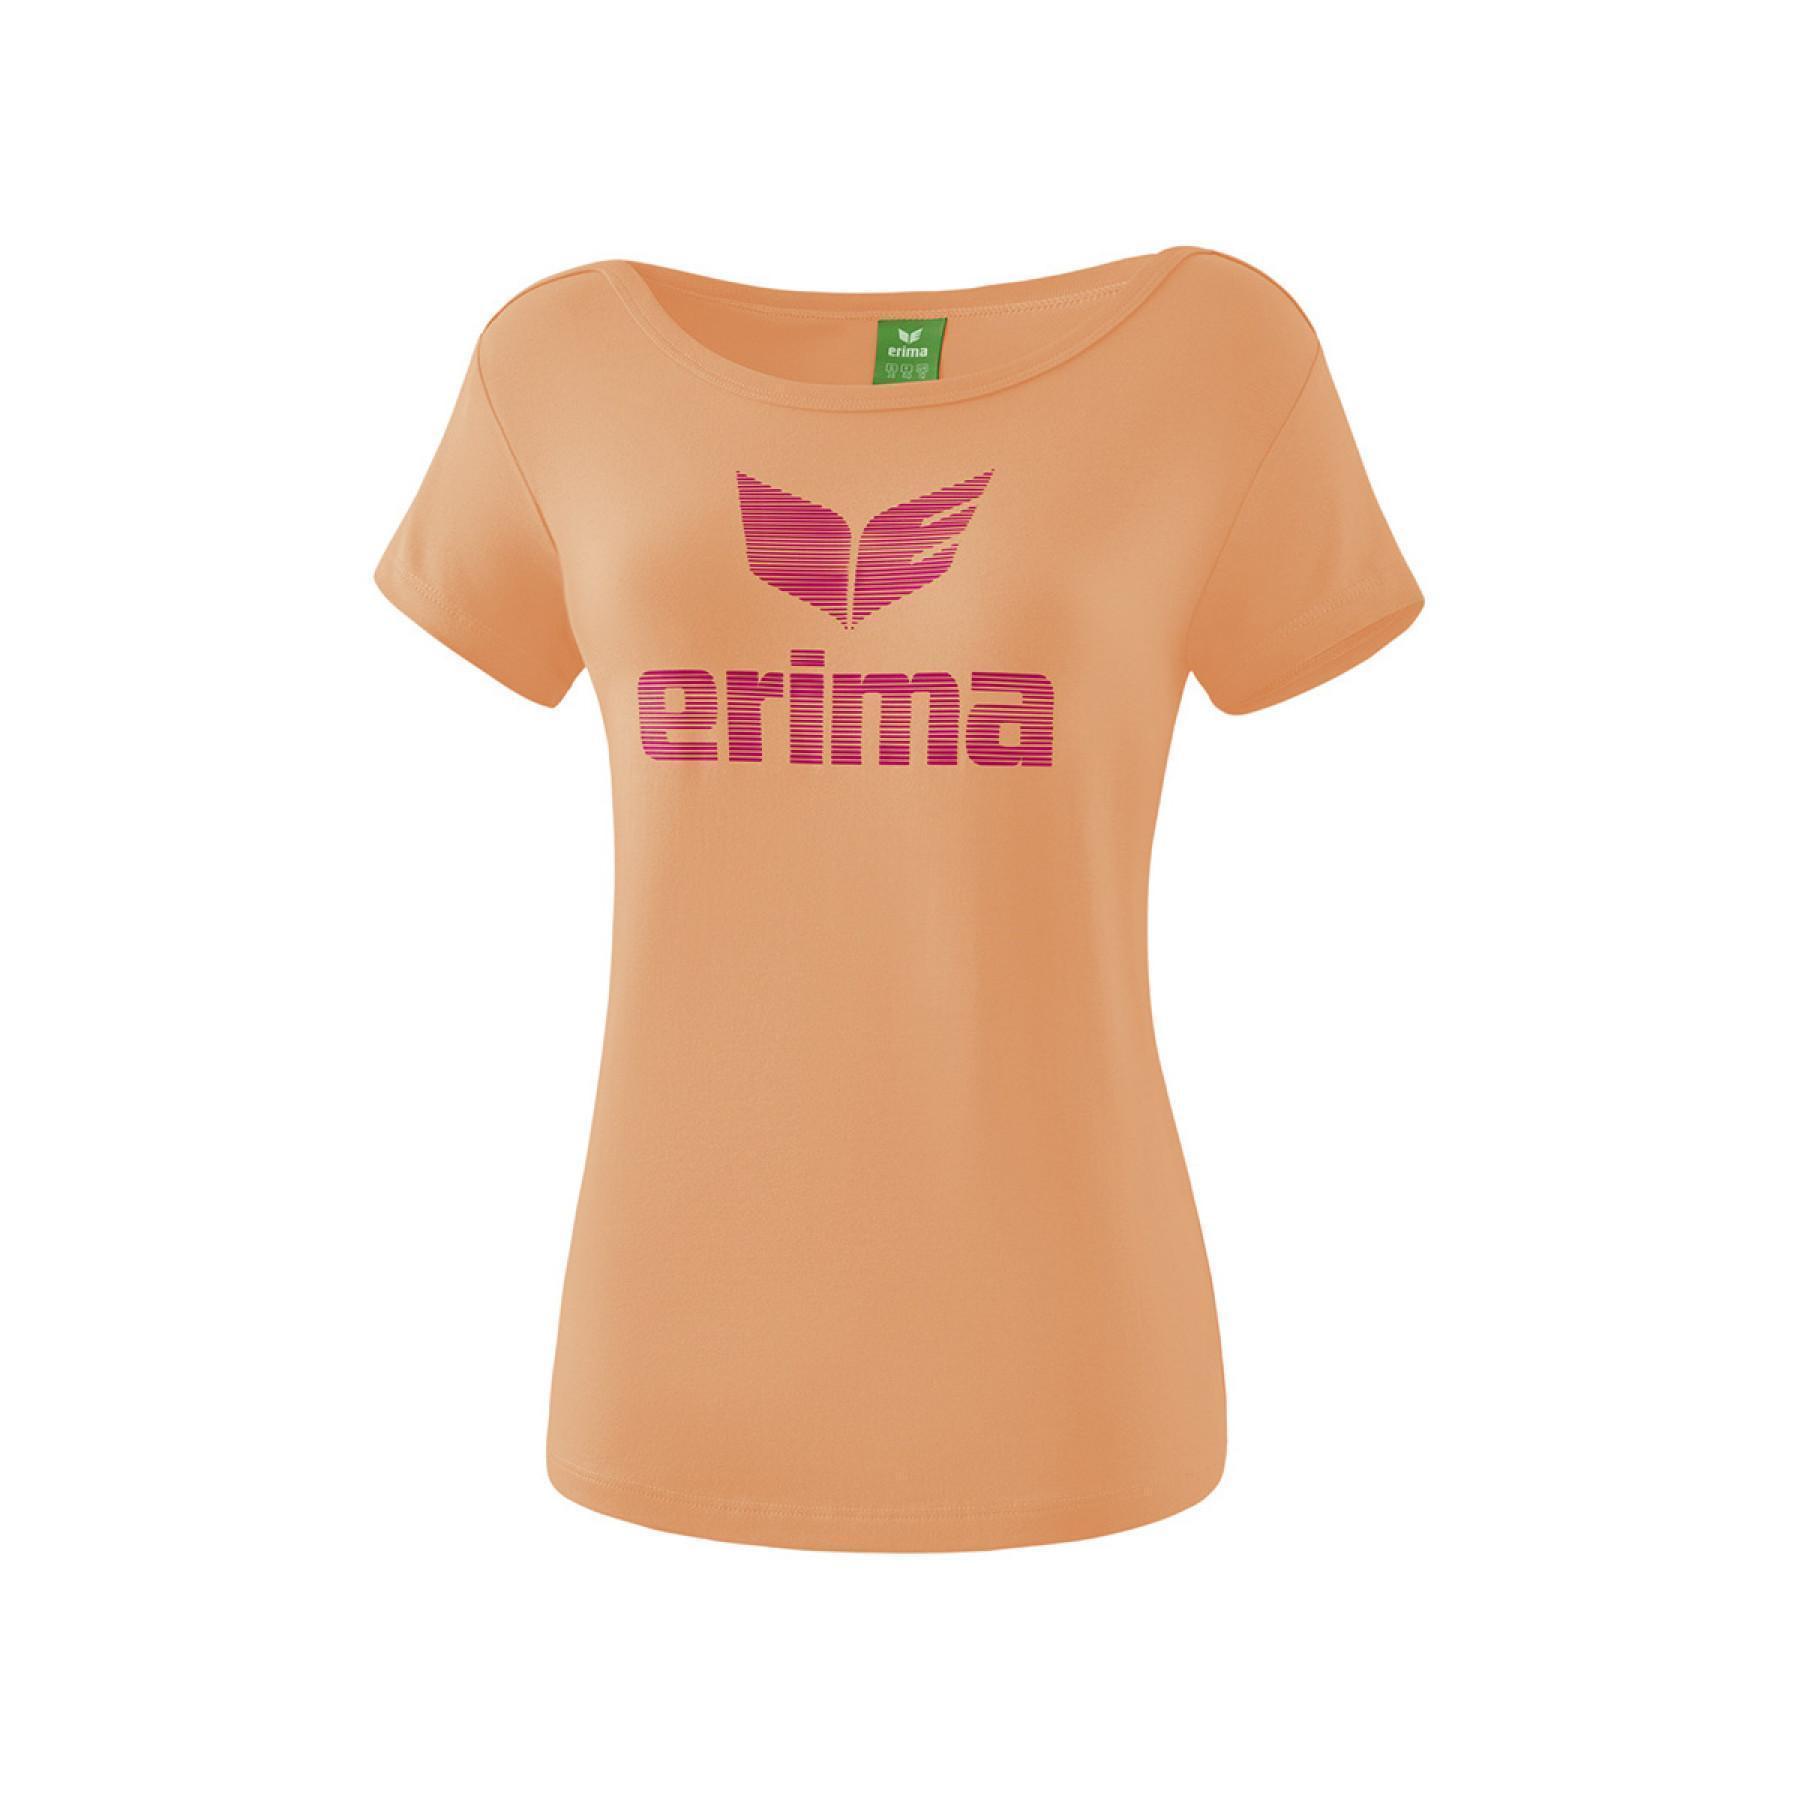 Camiseta de mujer Erima Essential